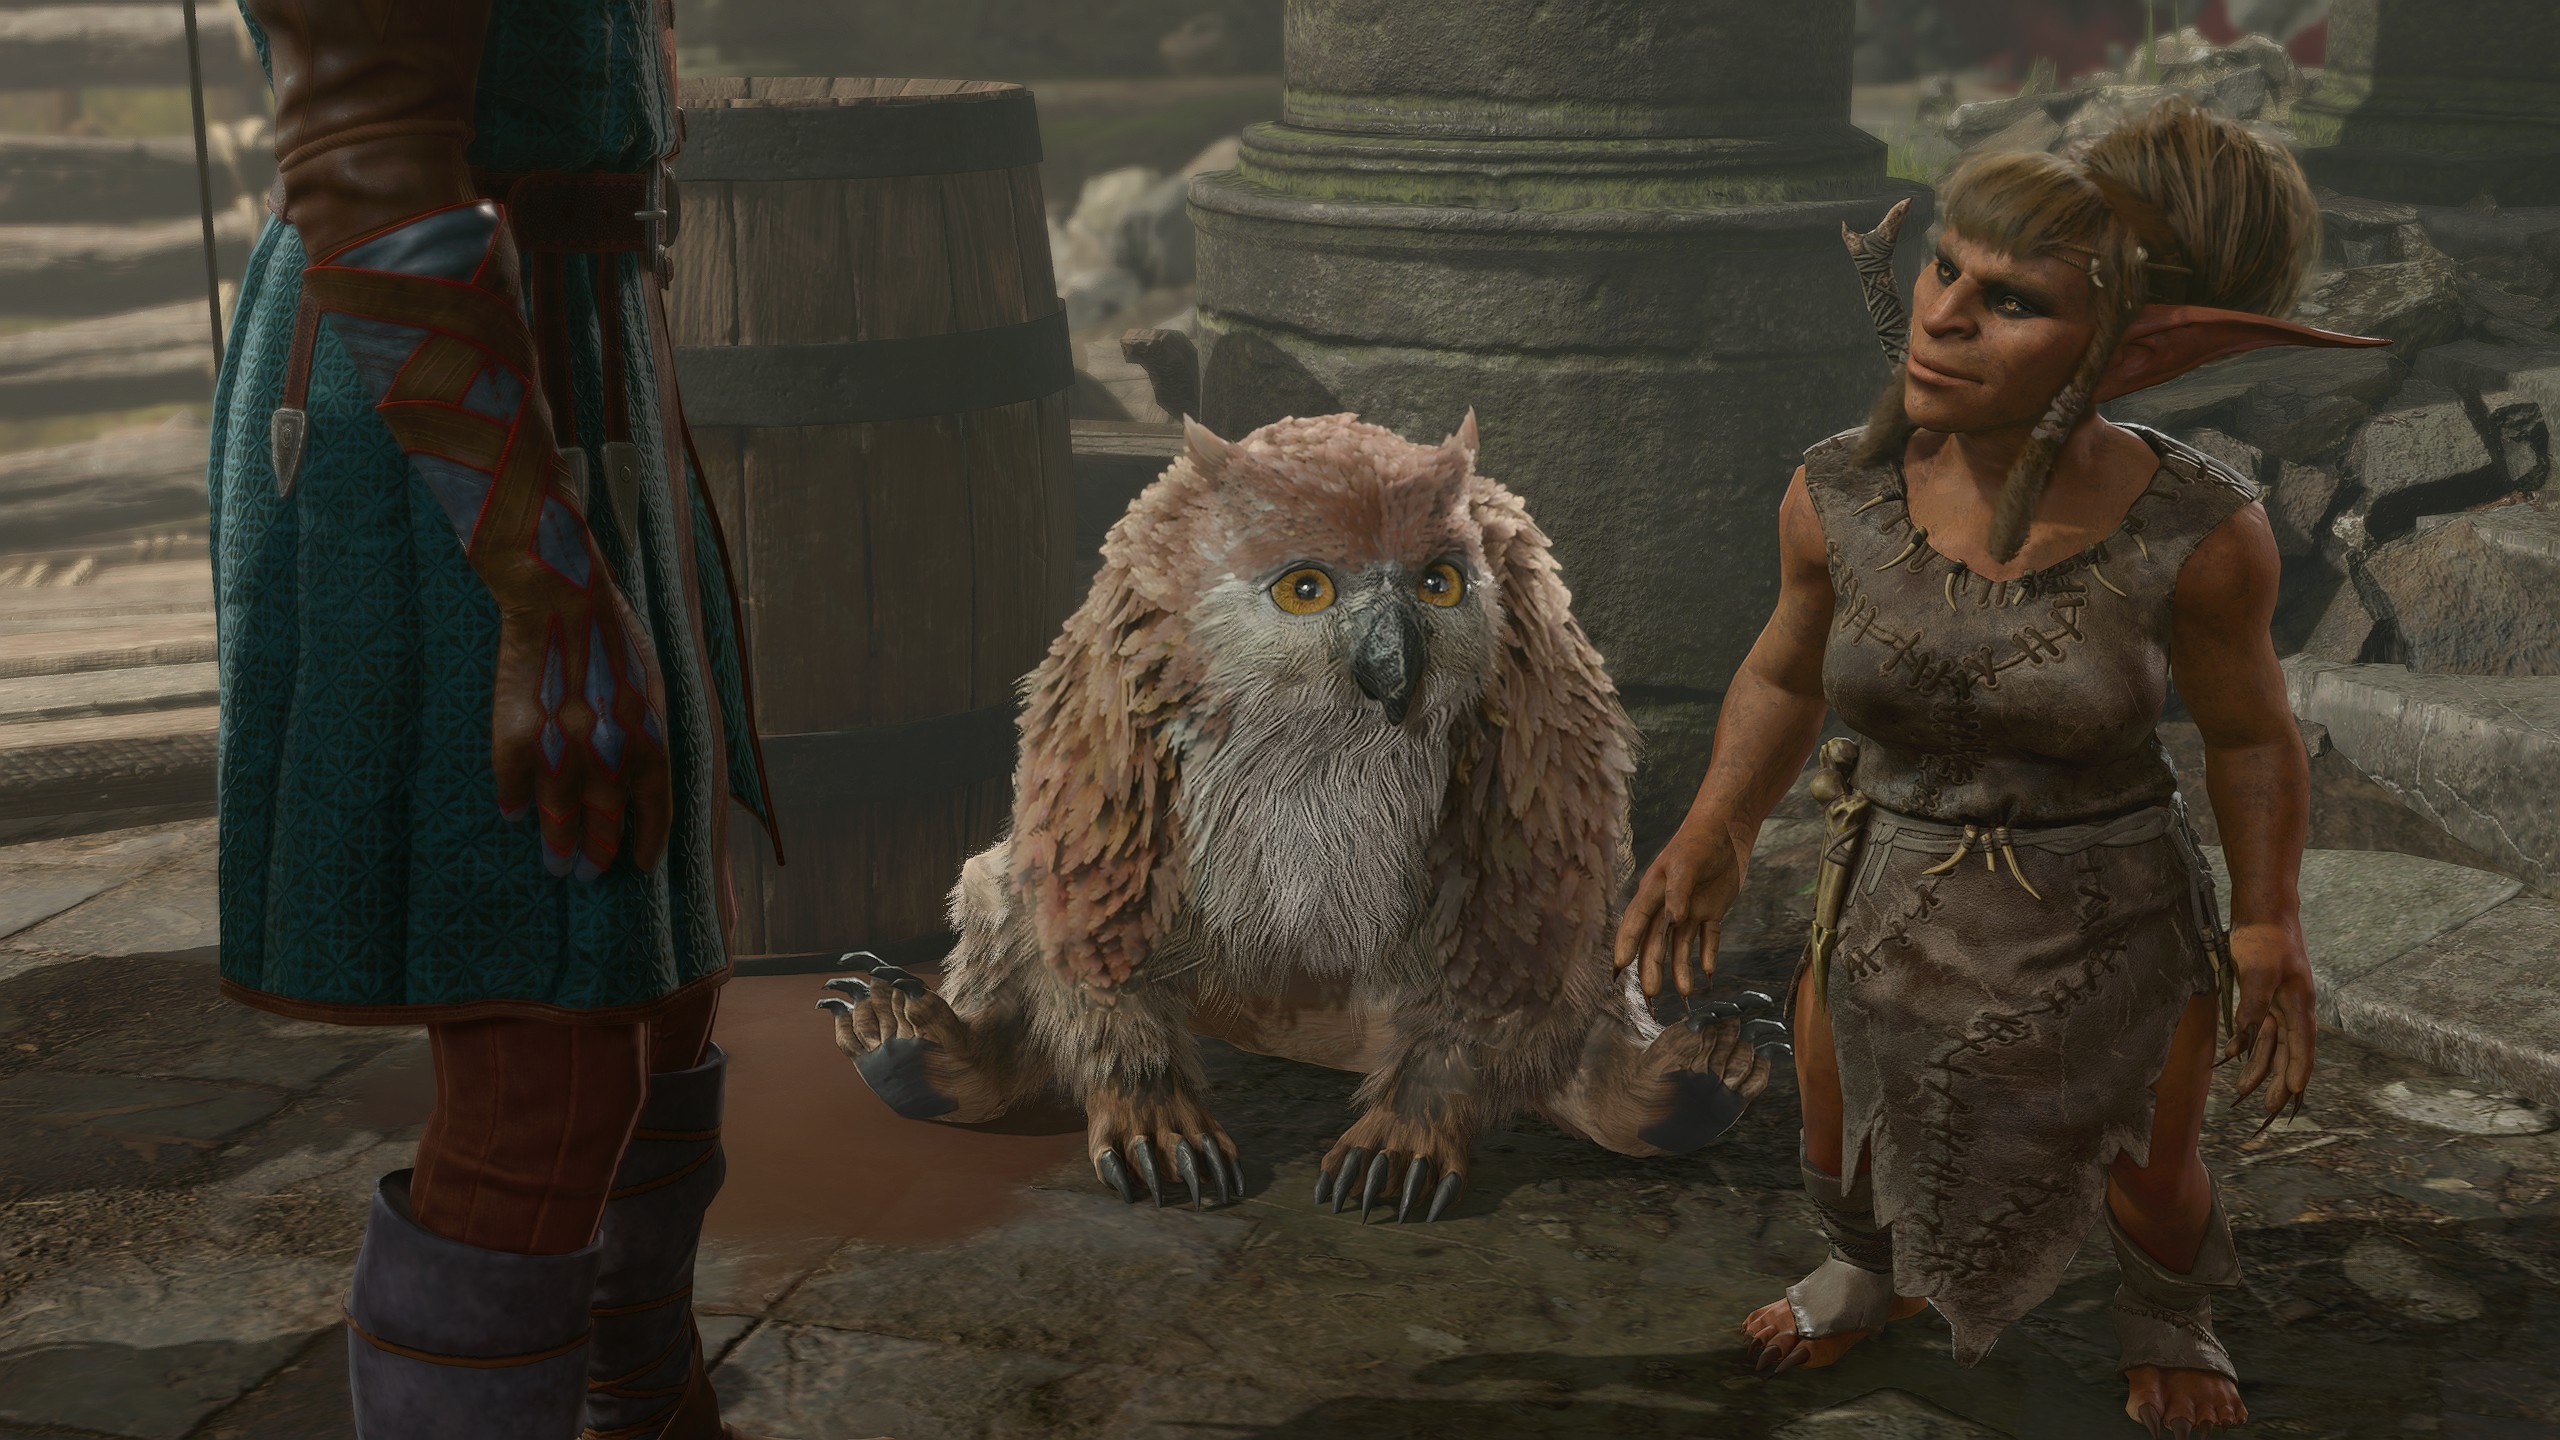 An owlbear cub squats next to a goblin